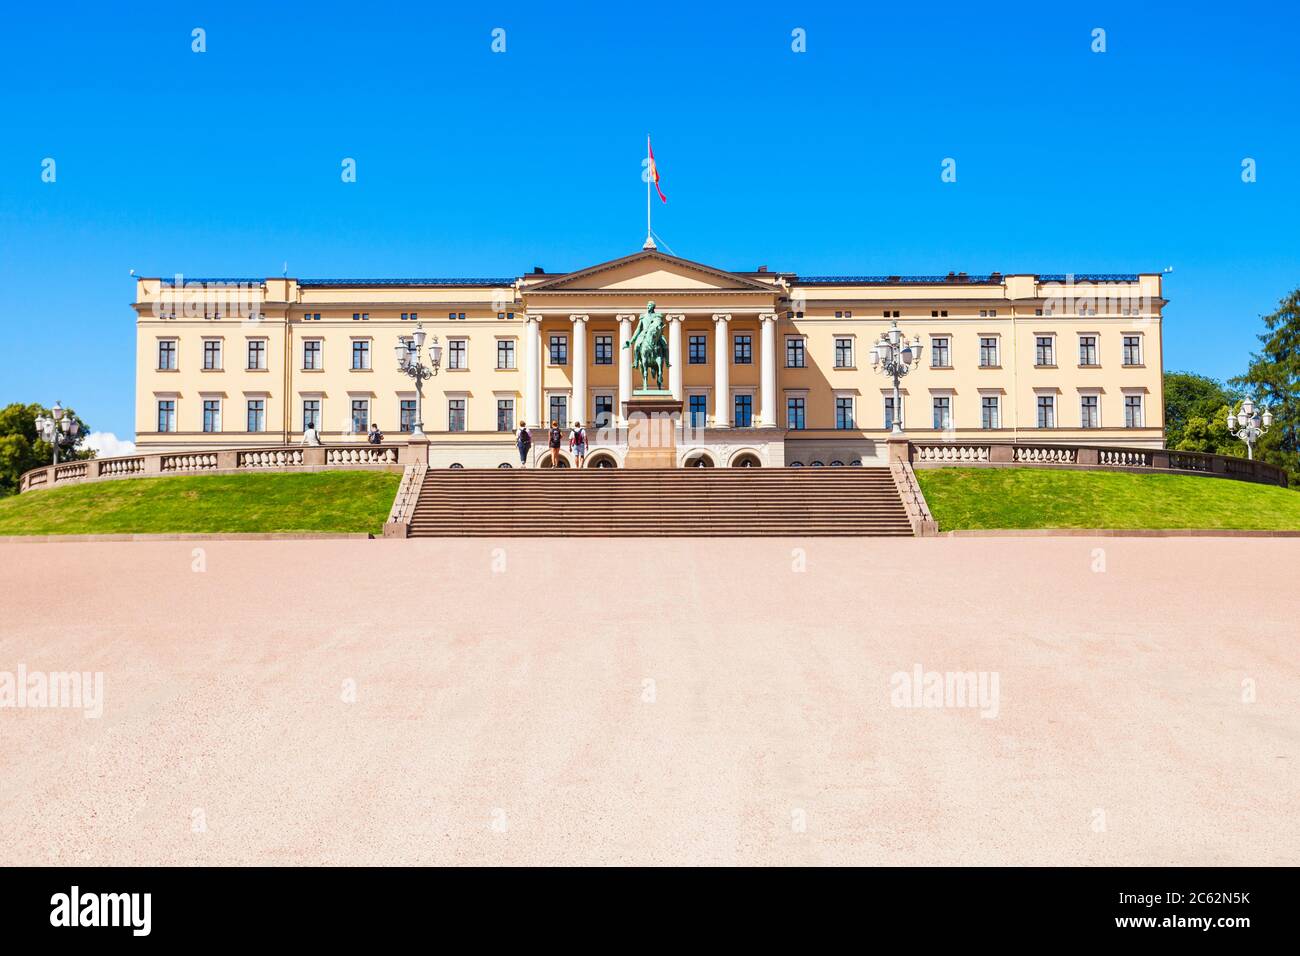 Il palazzo reale di Oslo, Norvegia. Il Palazzo Reale è la residenza ufficiale del presente monarca norvegese. Foto Stock